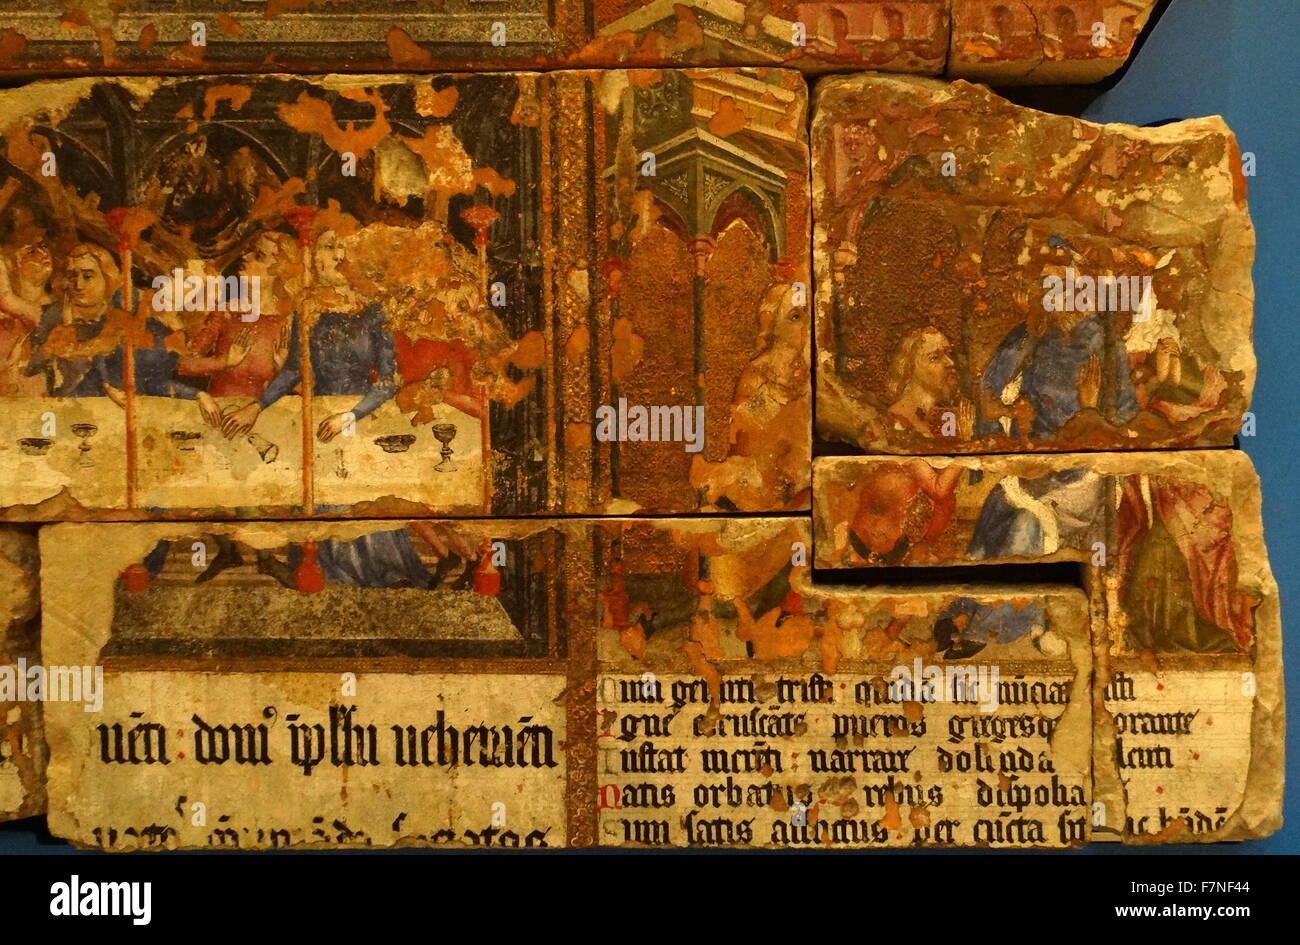 La pintura de la pared de St Stephen's Chapelat el palacio de Westminster, Londres, mostrando escenas del Antiguo Testamento Foto de stock